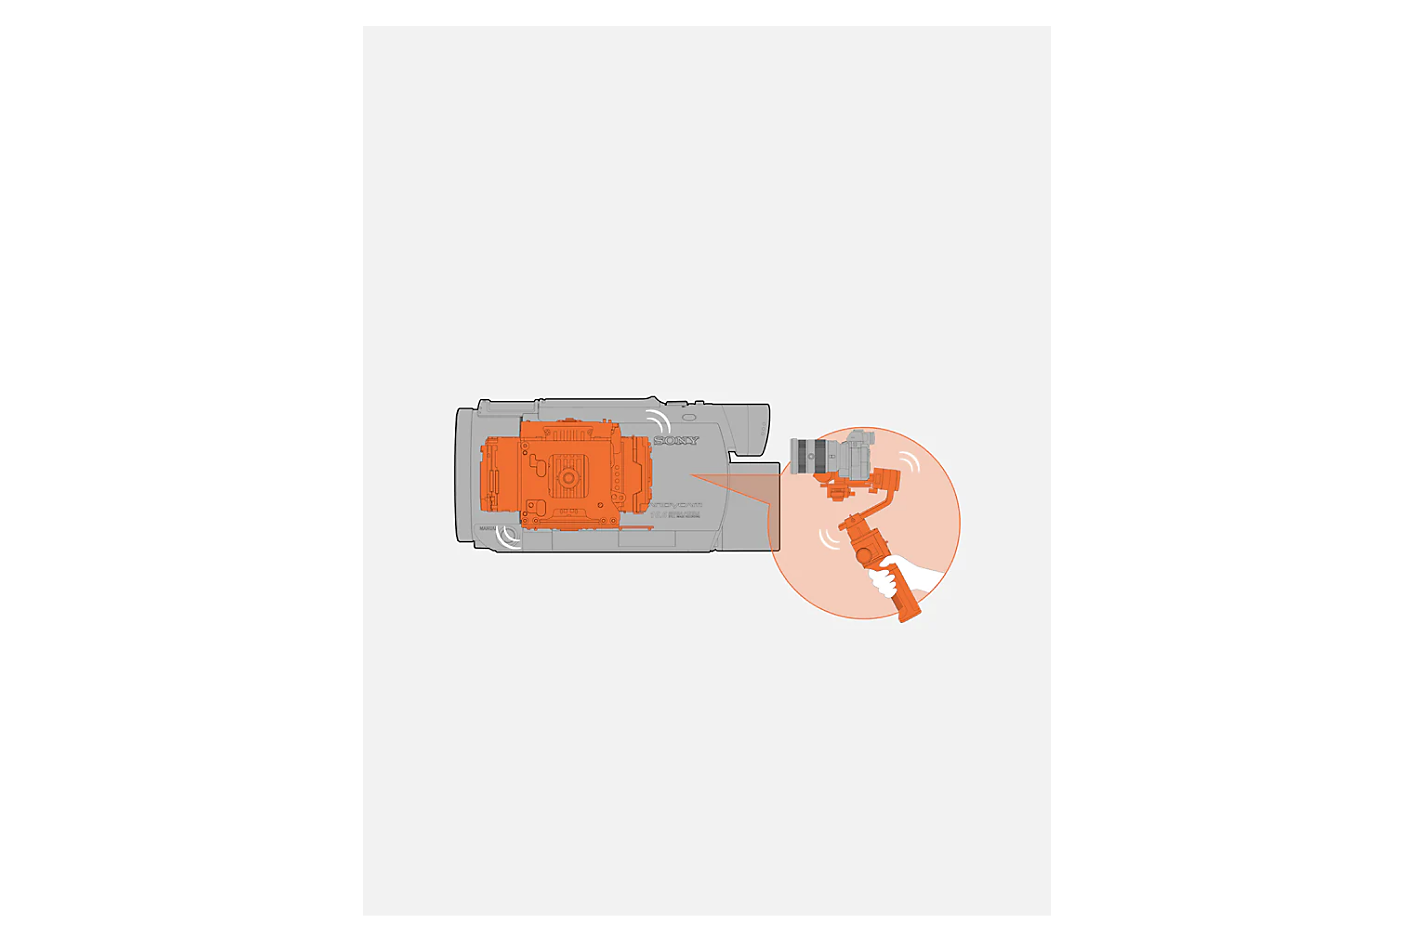 Grafika sivog kamkordera s narančastim ugrađenim kardanskim mehanizmom